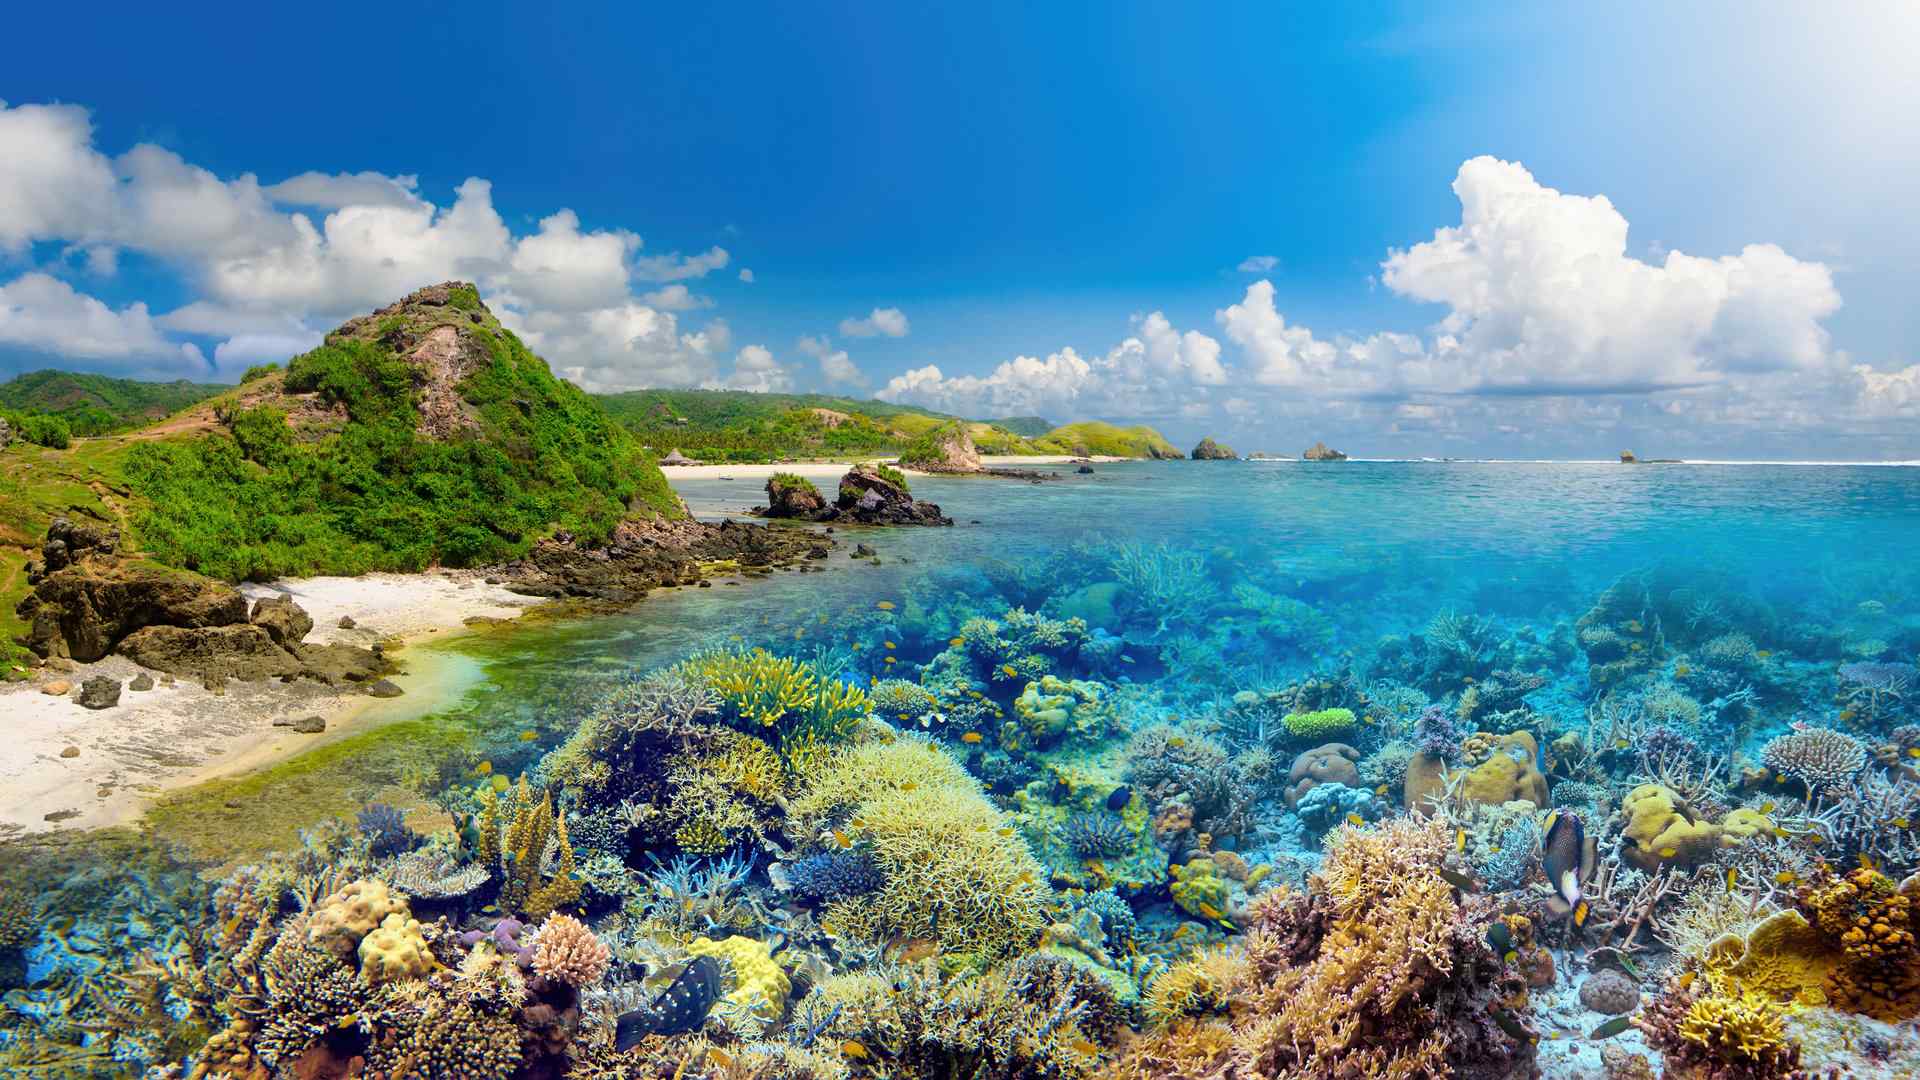 美丽的海底珊瑚礁高清风景图片桌面壁纸第一辑